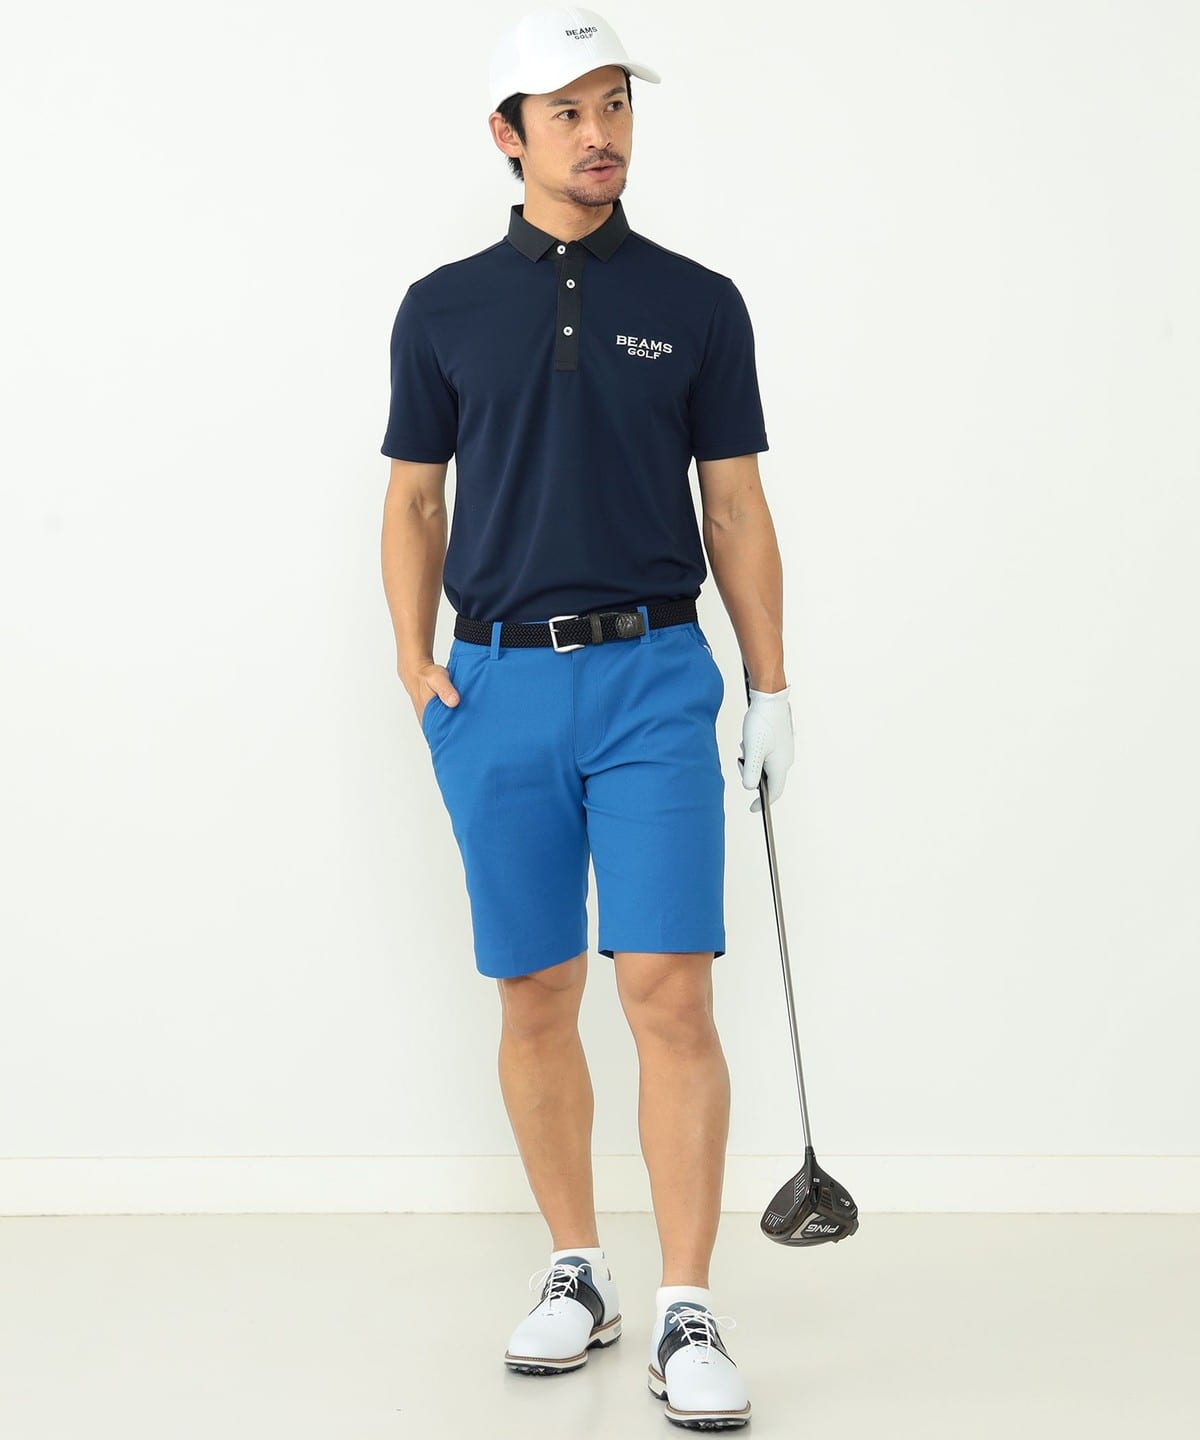 正規品・新品ビームスゴルフポロシャツ半袖ストレッチDry日本製　SMネイビー